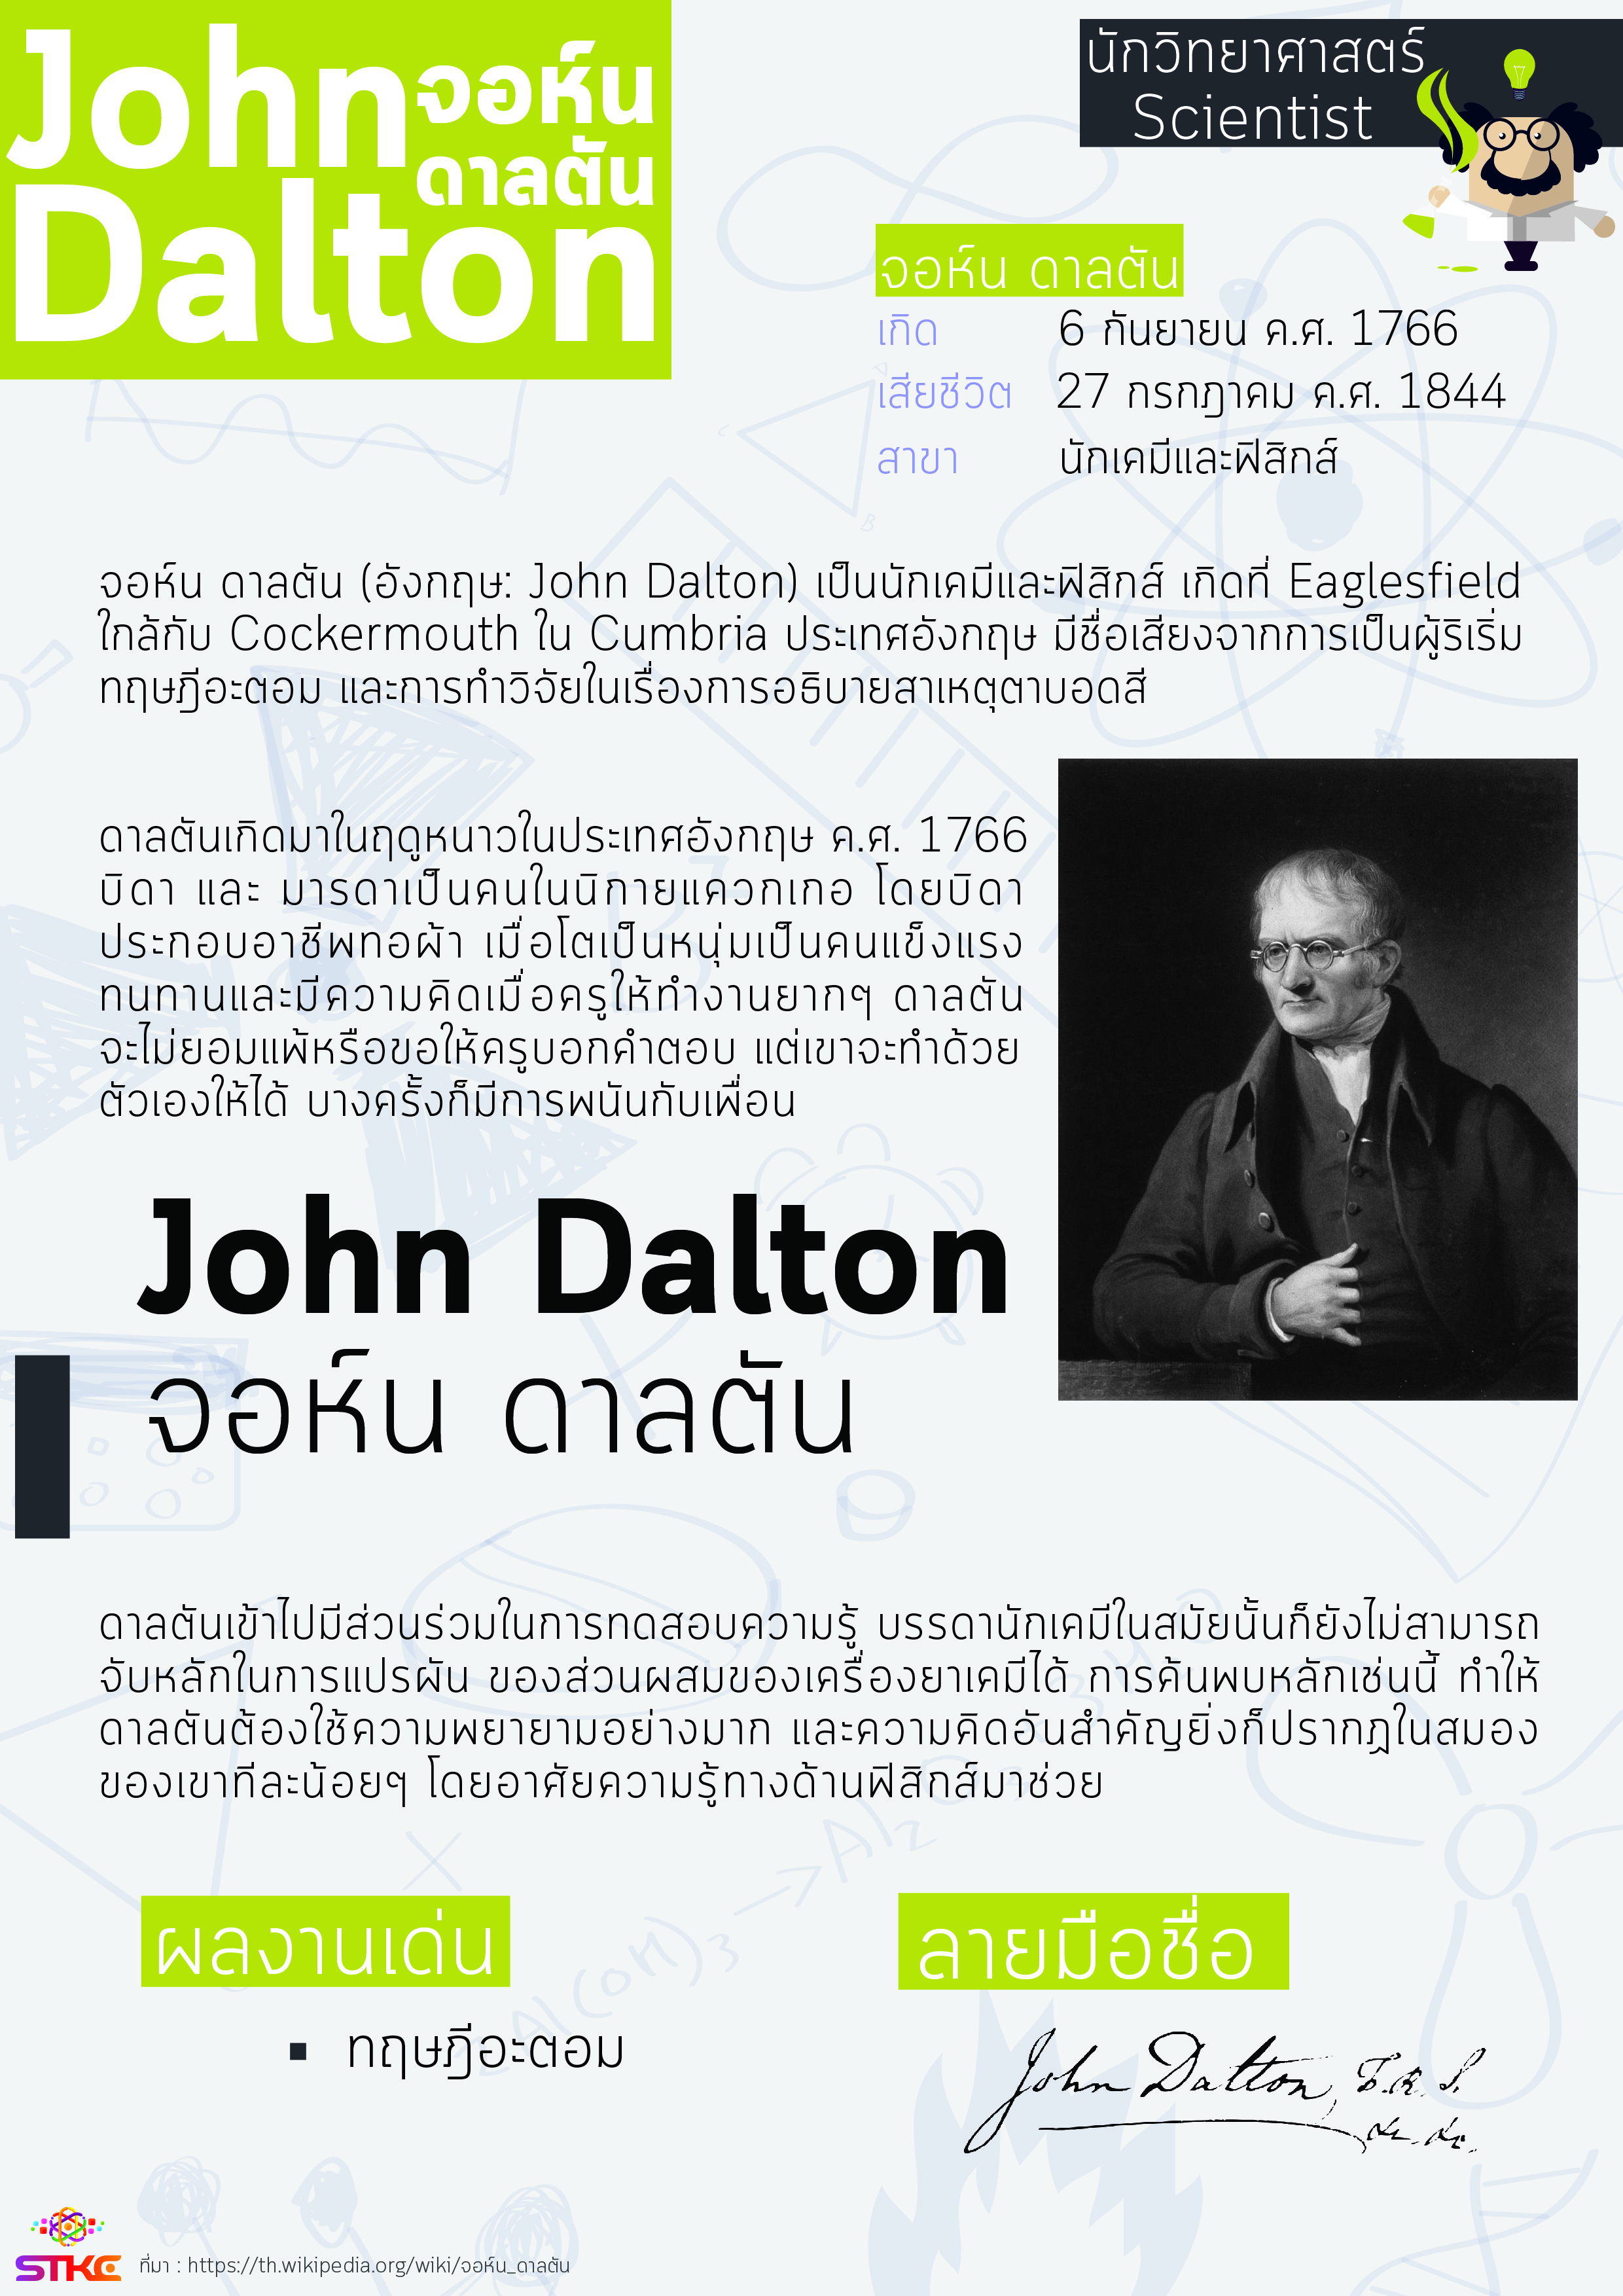 นักวิทยาศาสตร์ จอห์น ดาลตัน (John Dalton)